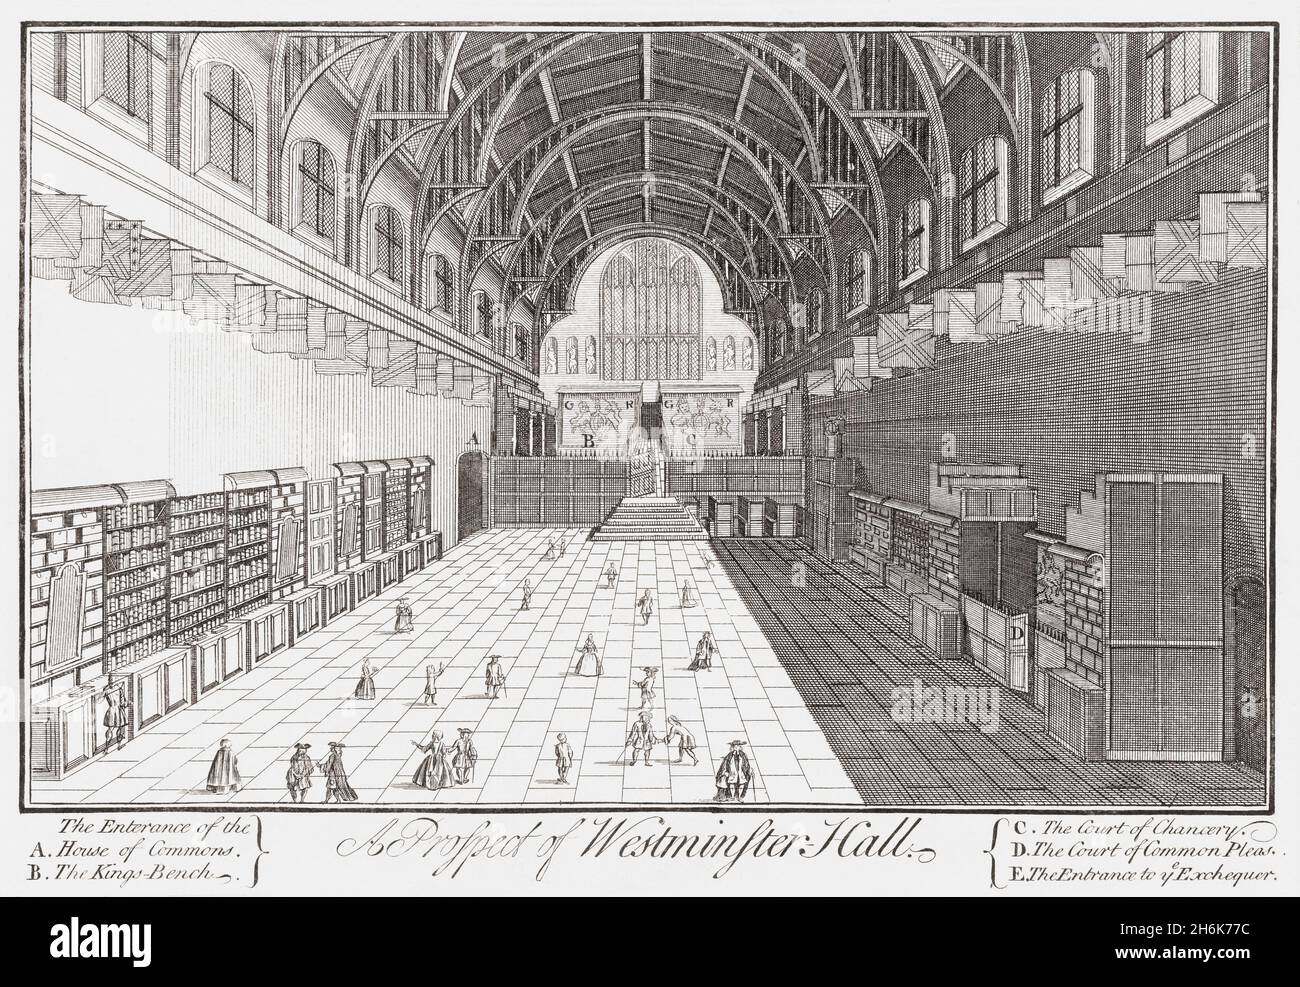 Das Innere der Westminster Hall, London, England um 1725. Die Halle ist der älteste Teil des Palastes von Westminster. Es wurde ursprünglich im Jahr 1097 gebaut. Nach einem zeitgenössischen Druck eines nicht identifizierten Künstlers. Stockfoto